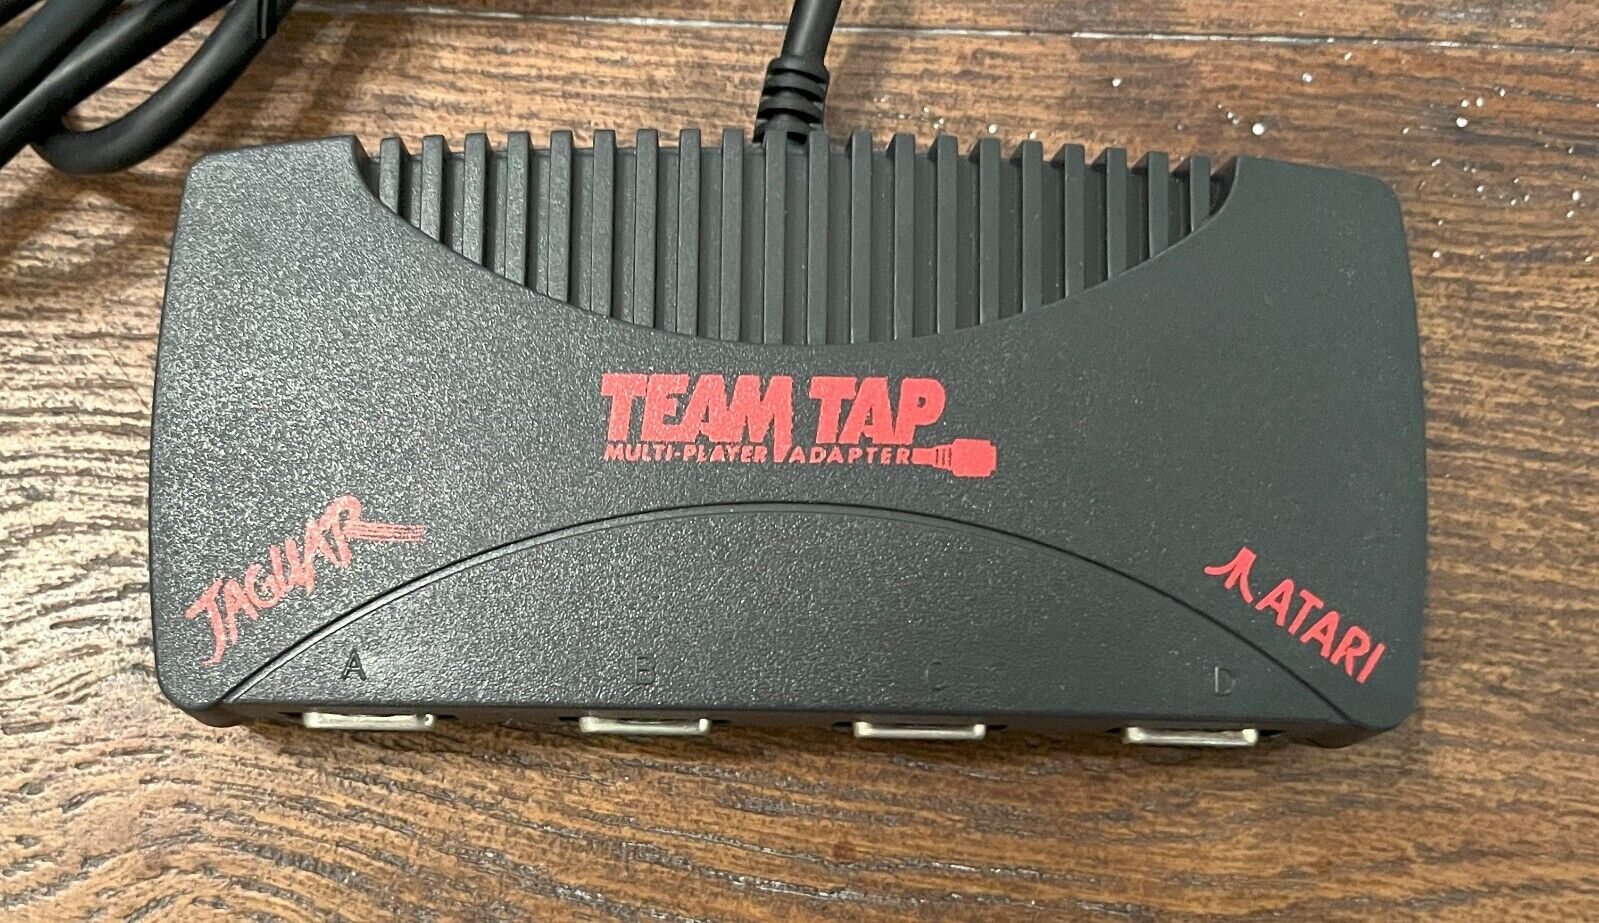 TEAM TAP Atari Jaguar Multi Player Adapter Used (no box) - Tested